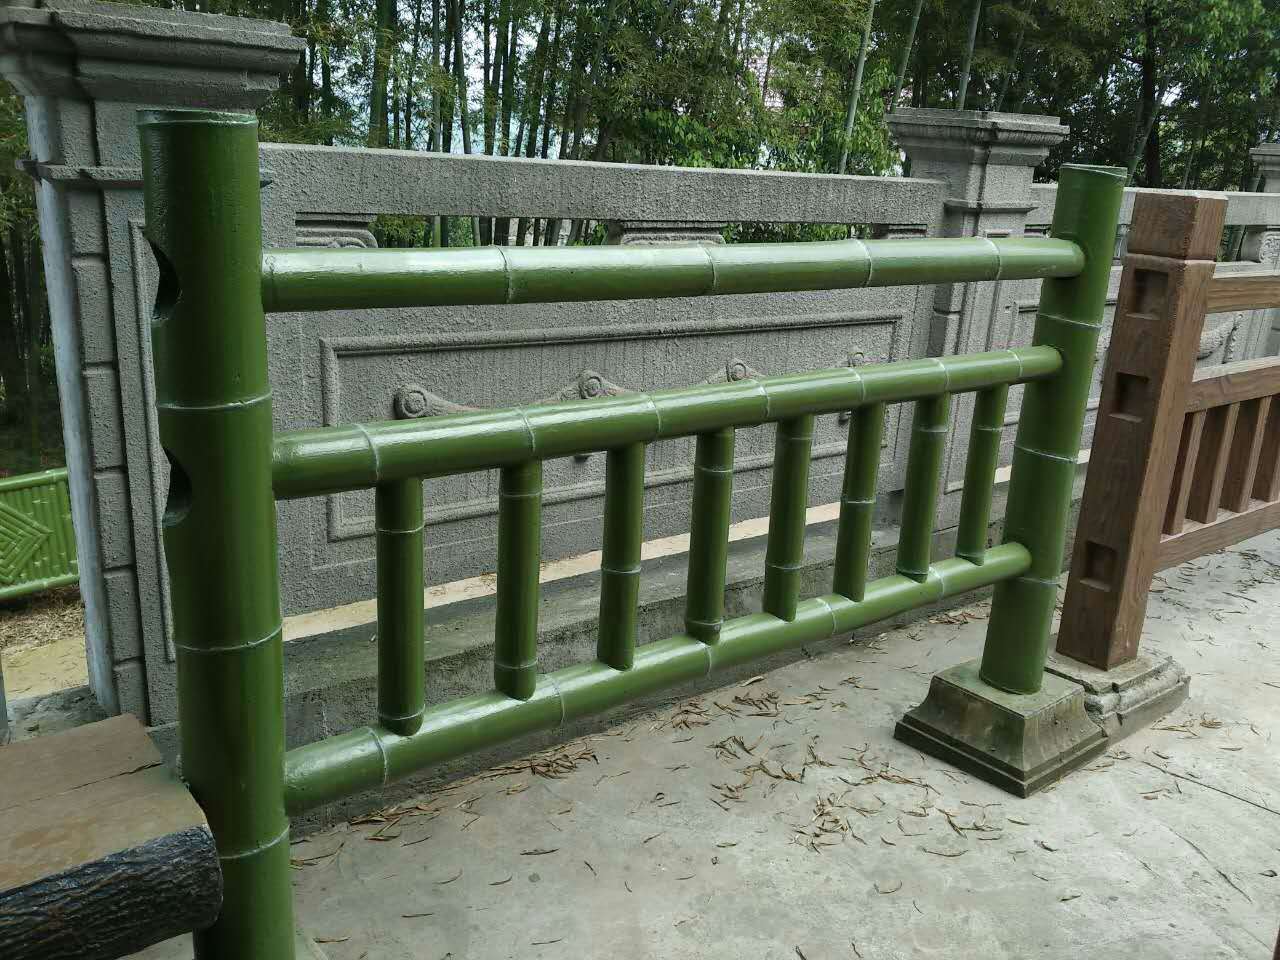 芜湖森林公园水泥仿木护栏造型别致唯美图片